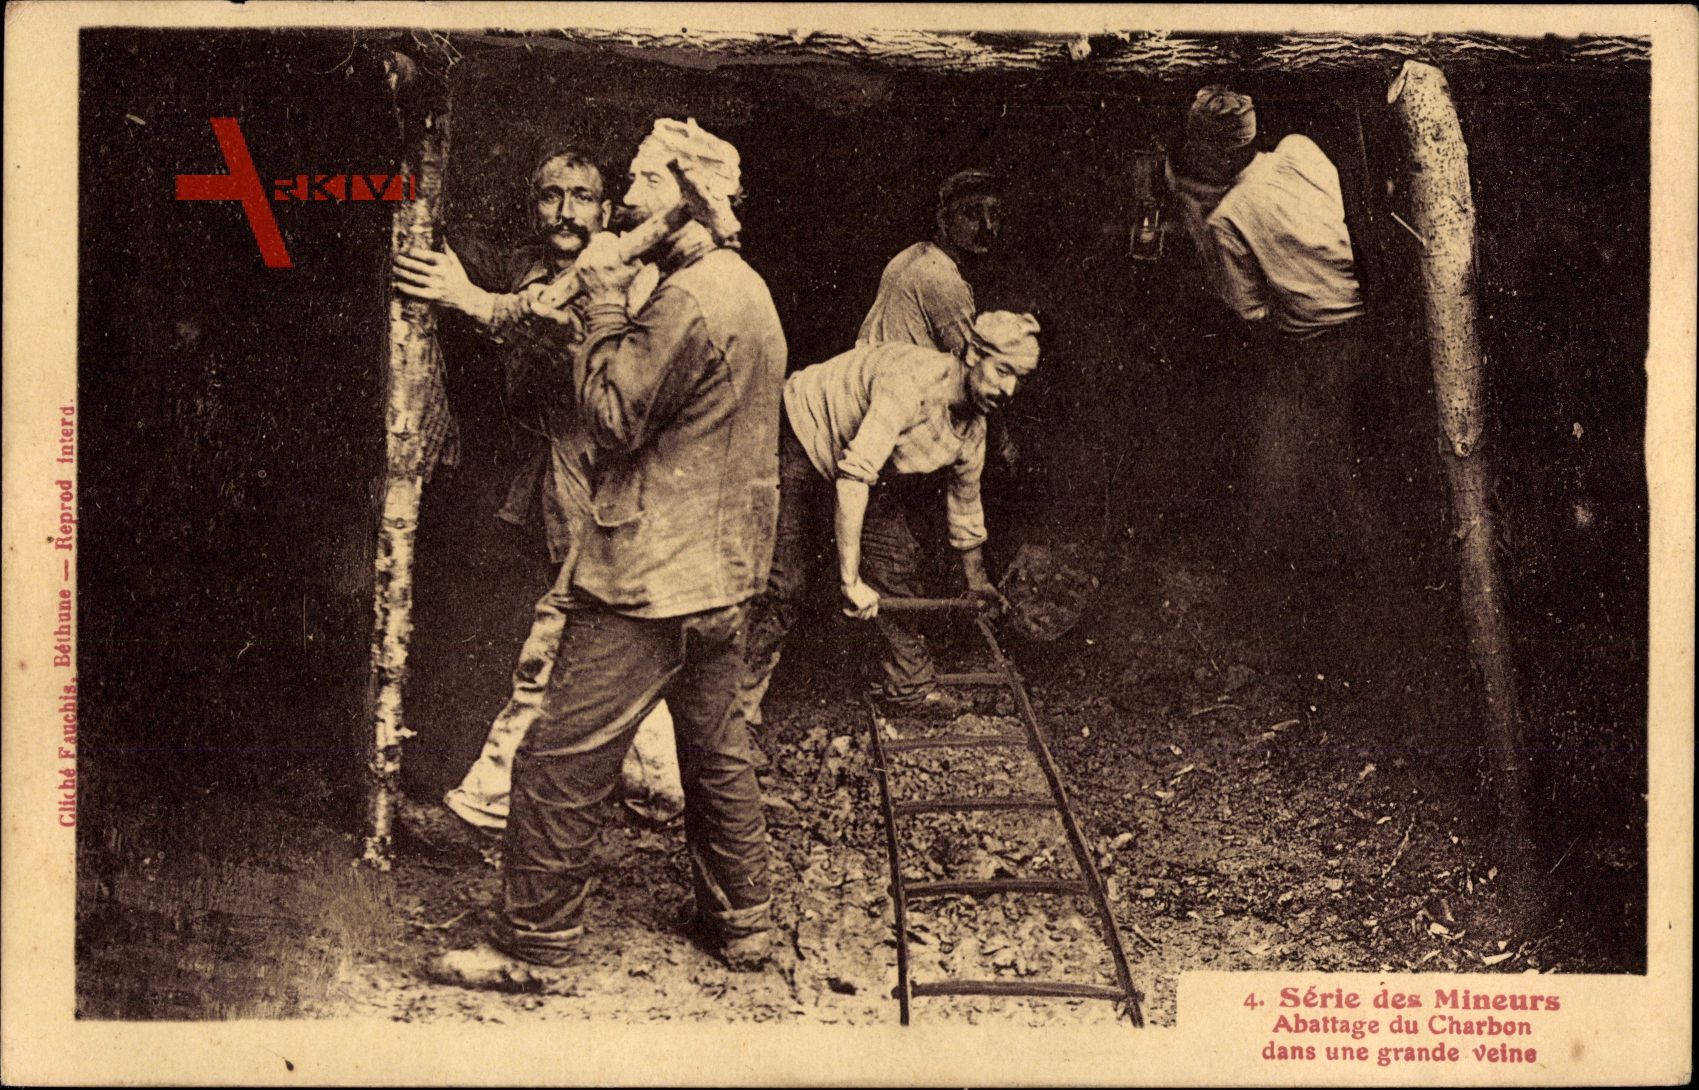 Série des Mineurs, Abattage du Charbon, Bergbau, Kohleabbau, Gleis